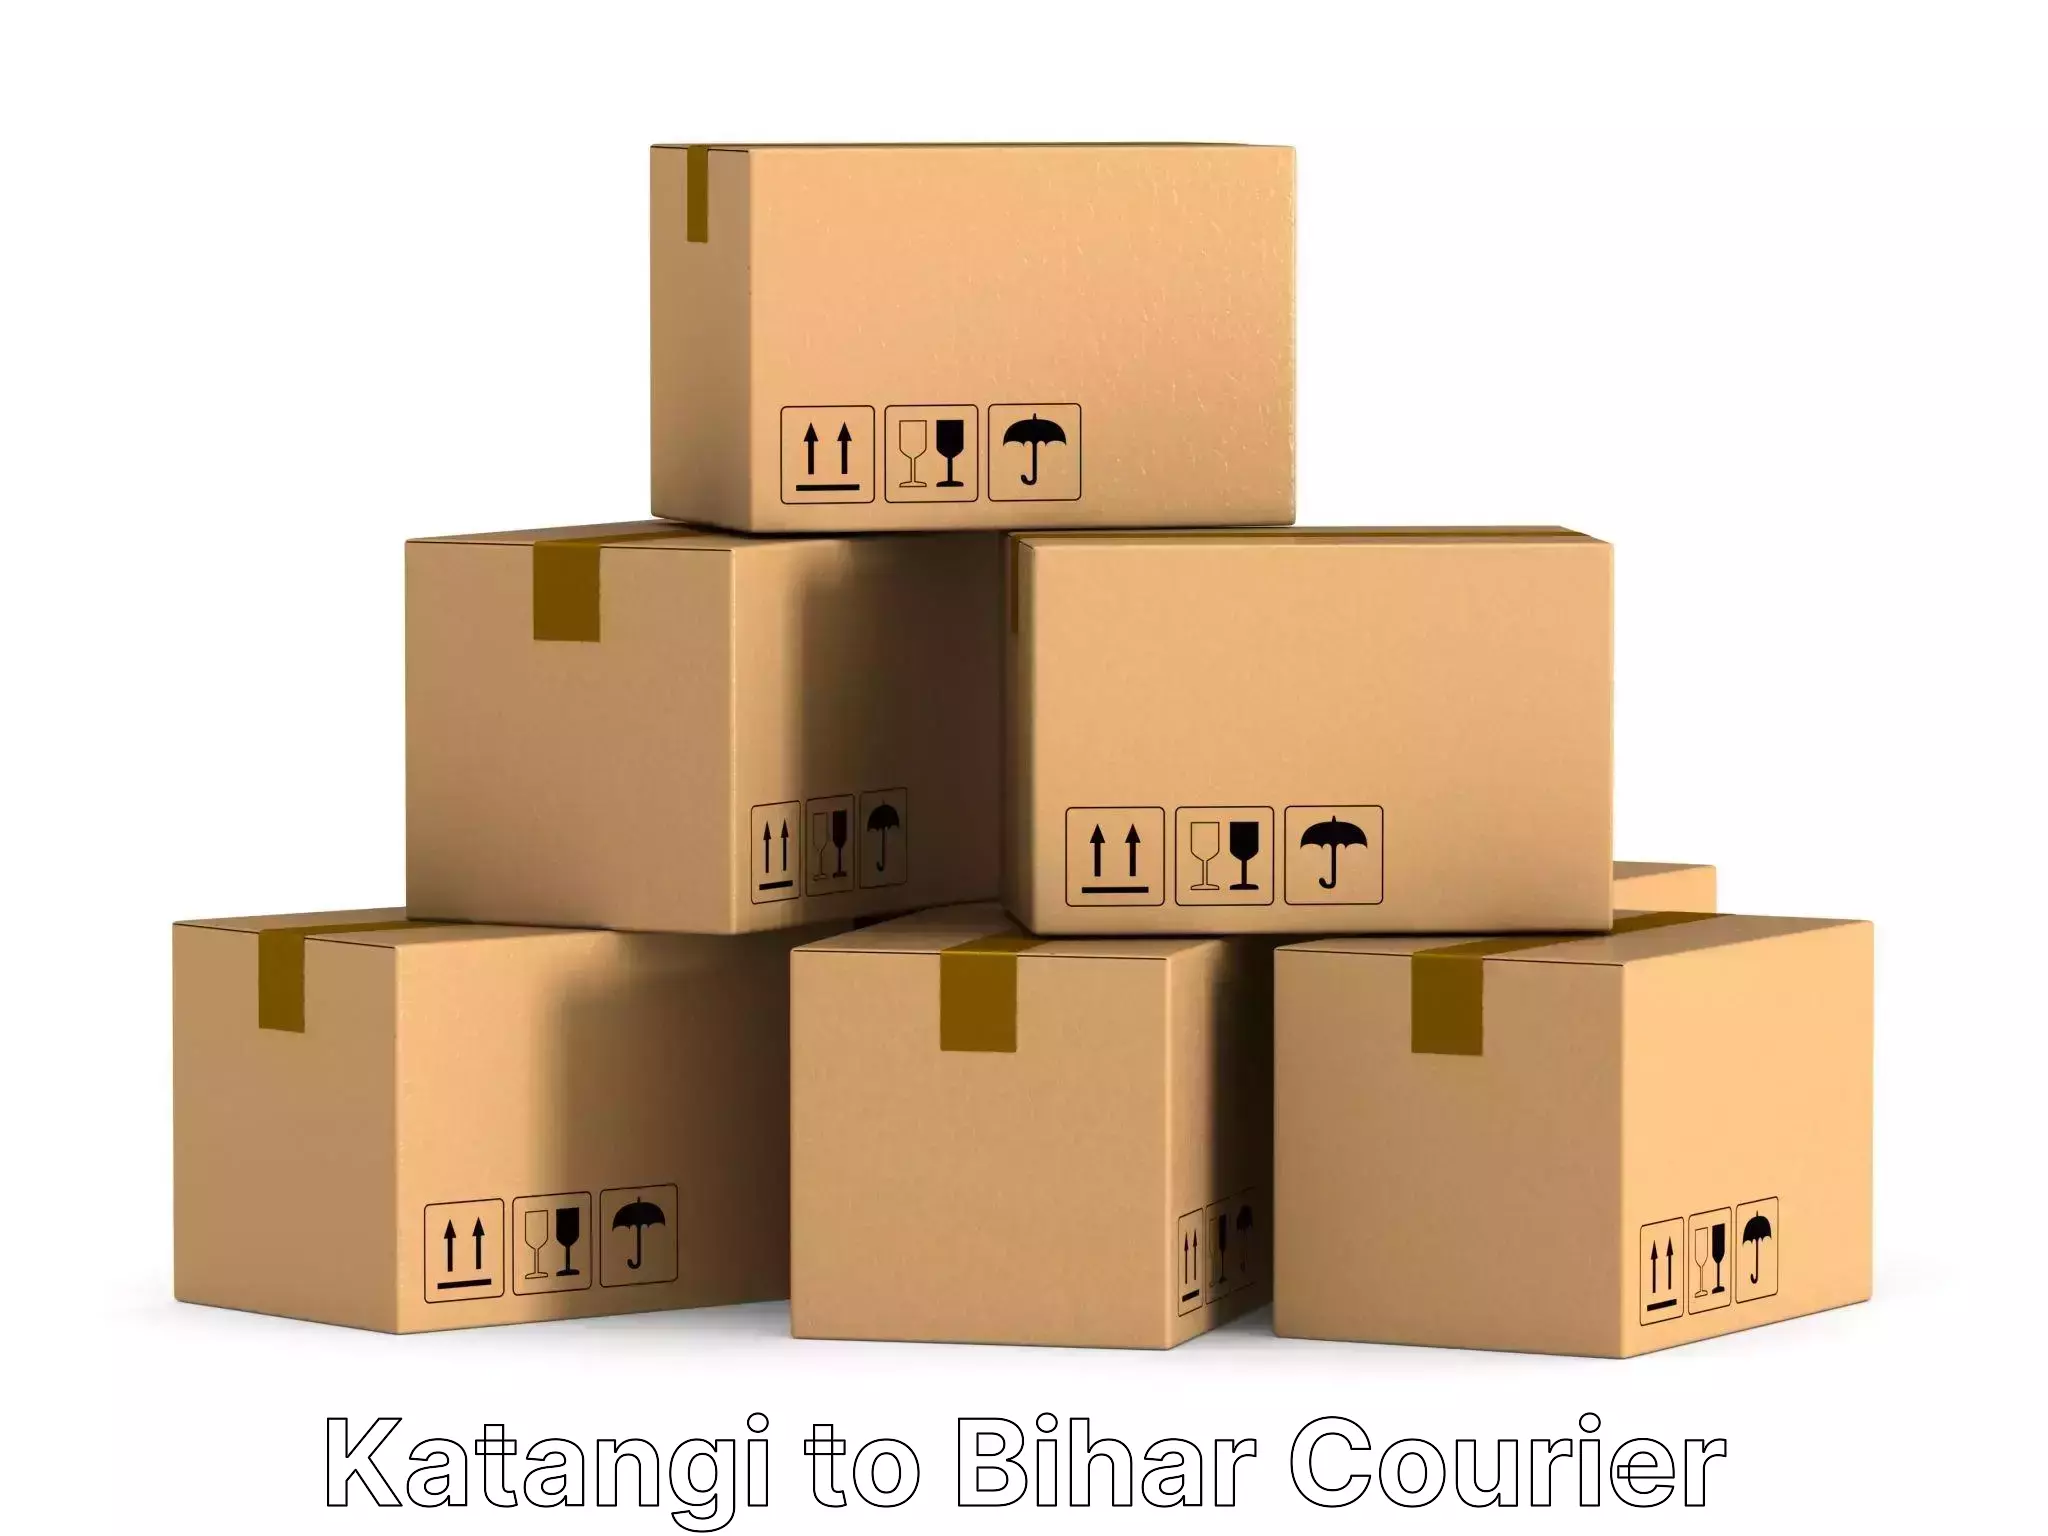 Full-service movers Katangi to Dhaka